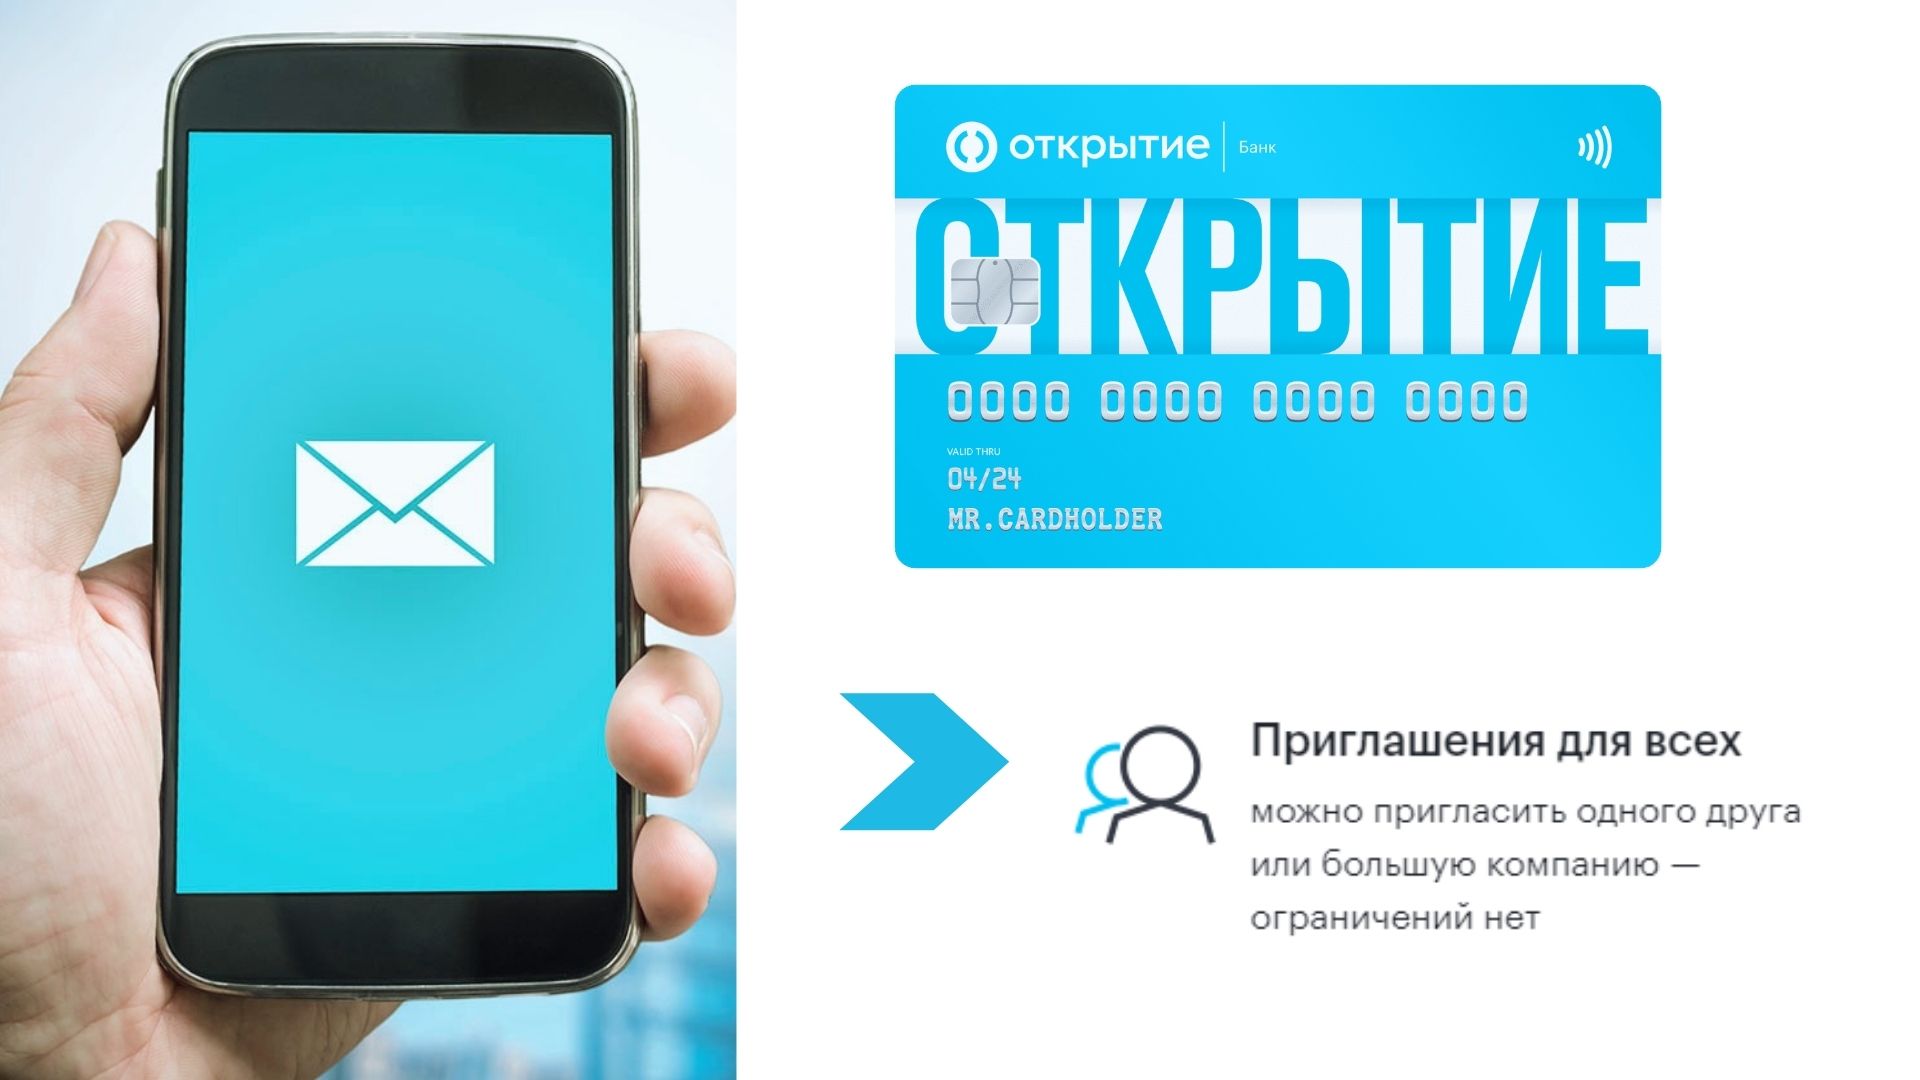 ОТКРЫТИЕ 1000 рублей за друга | Акция банка 2021 УСЛОВИЯ